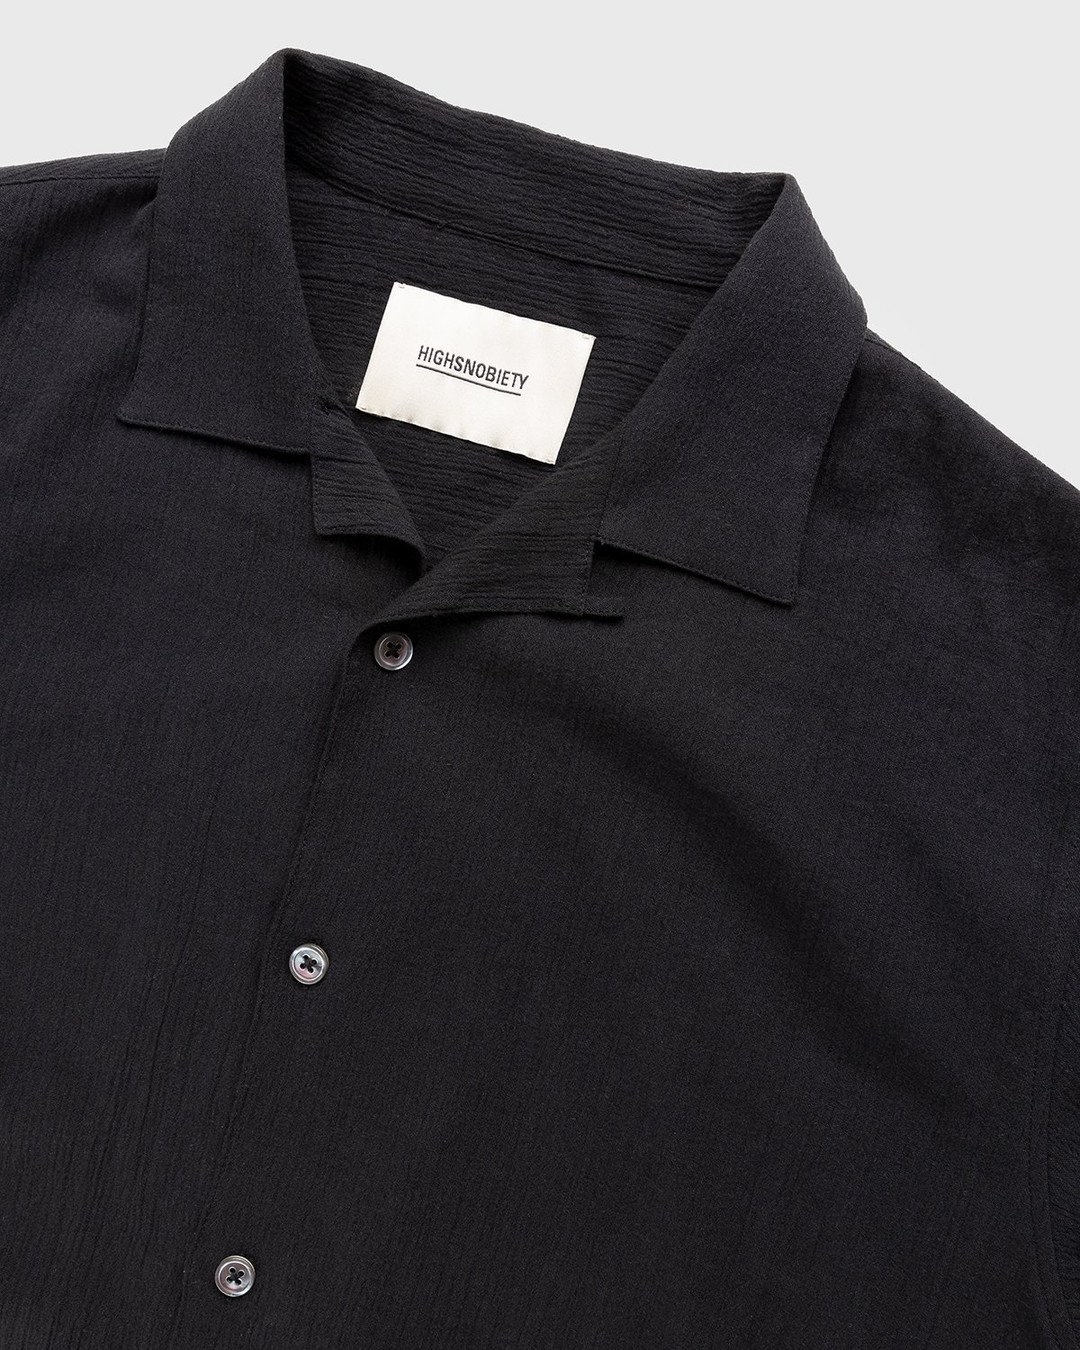 Highsnobiety – Crepe Short Sleeve Shirt Black - Shirts - Black - Image 4